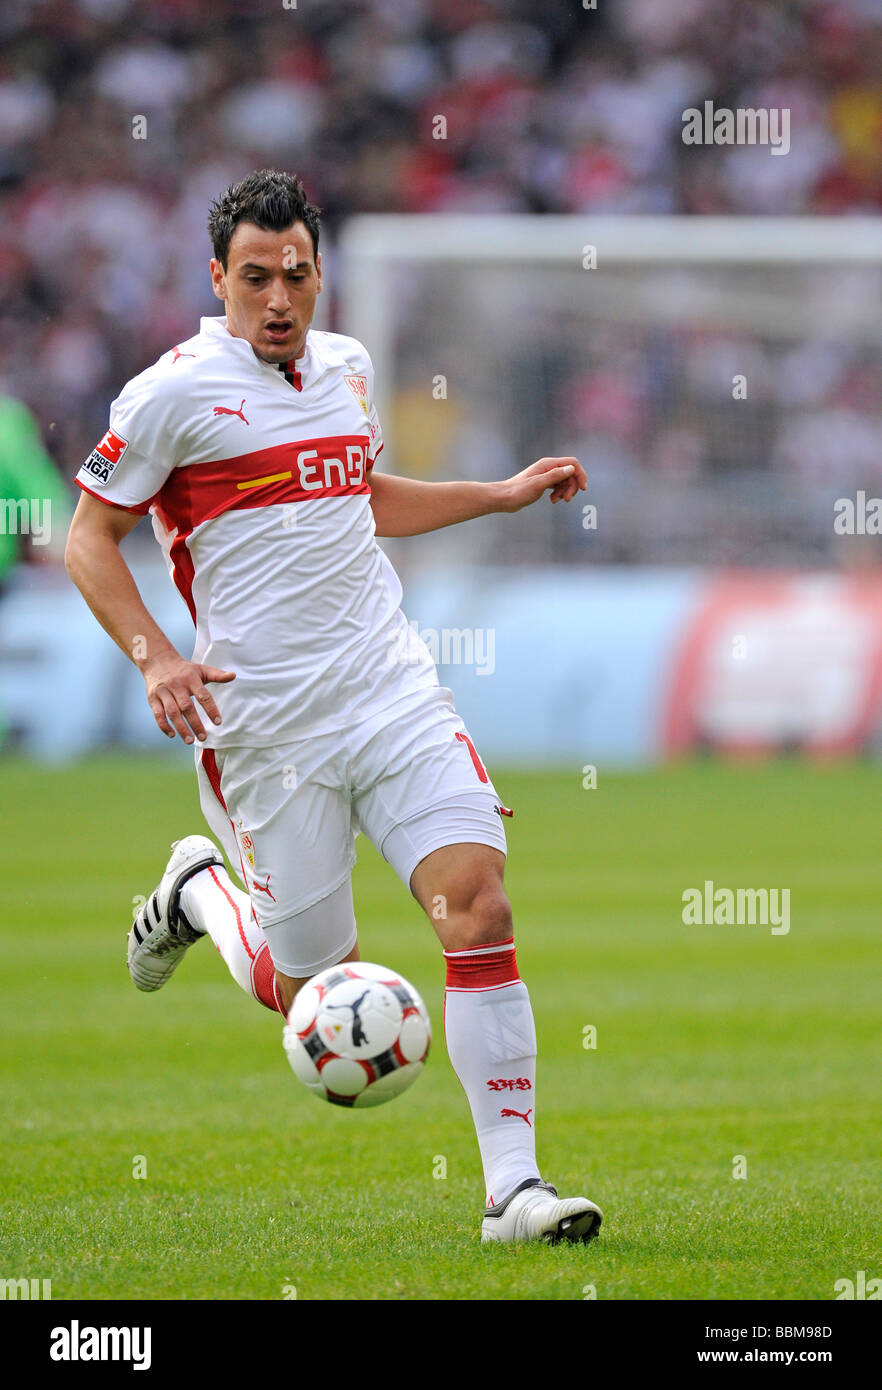 Timo Gebhart, German footballer playing for VfB Stuttgart, leading the ball Stock Photo